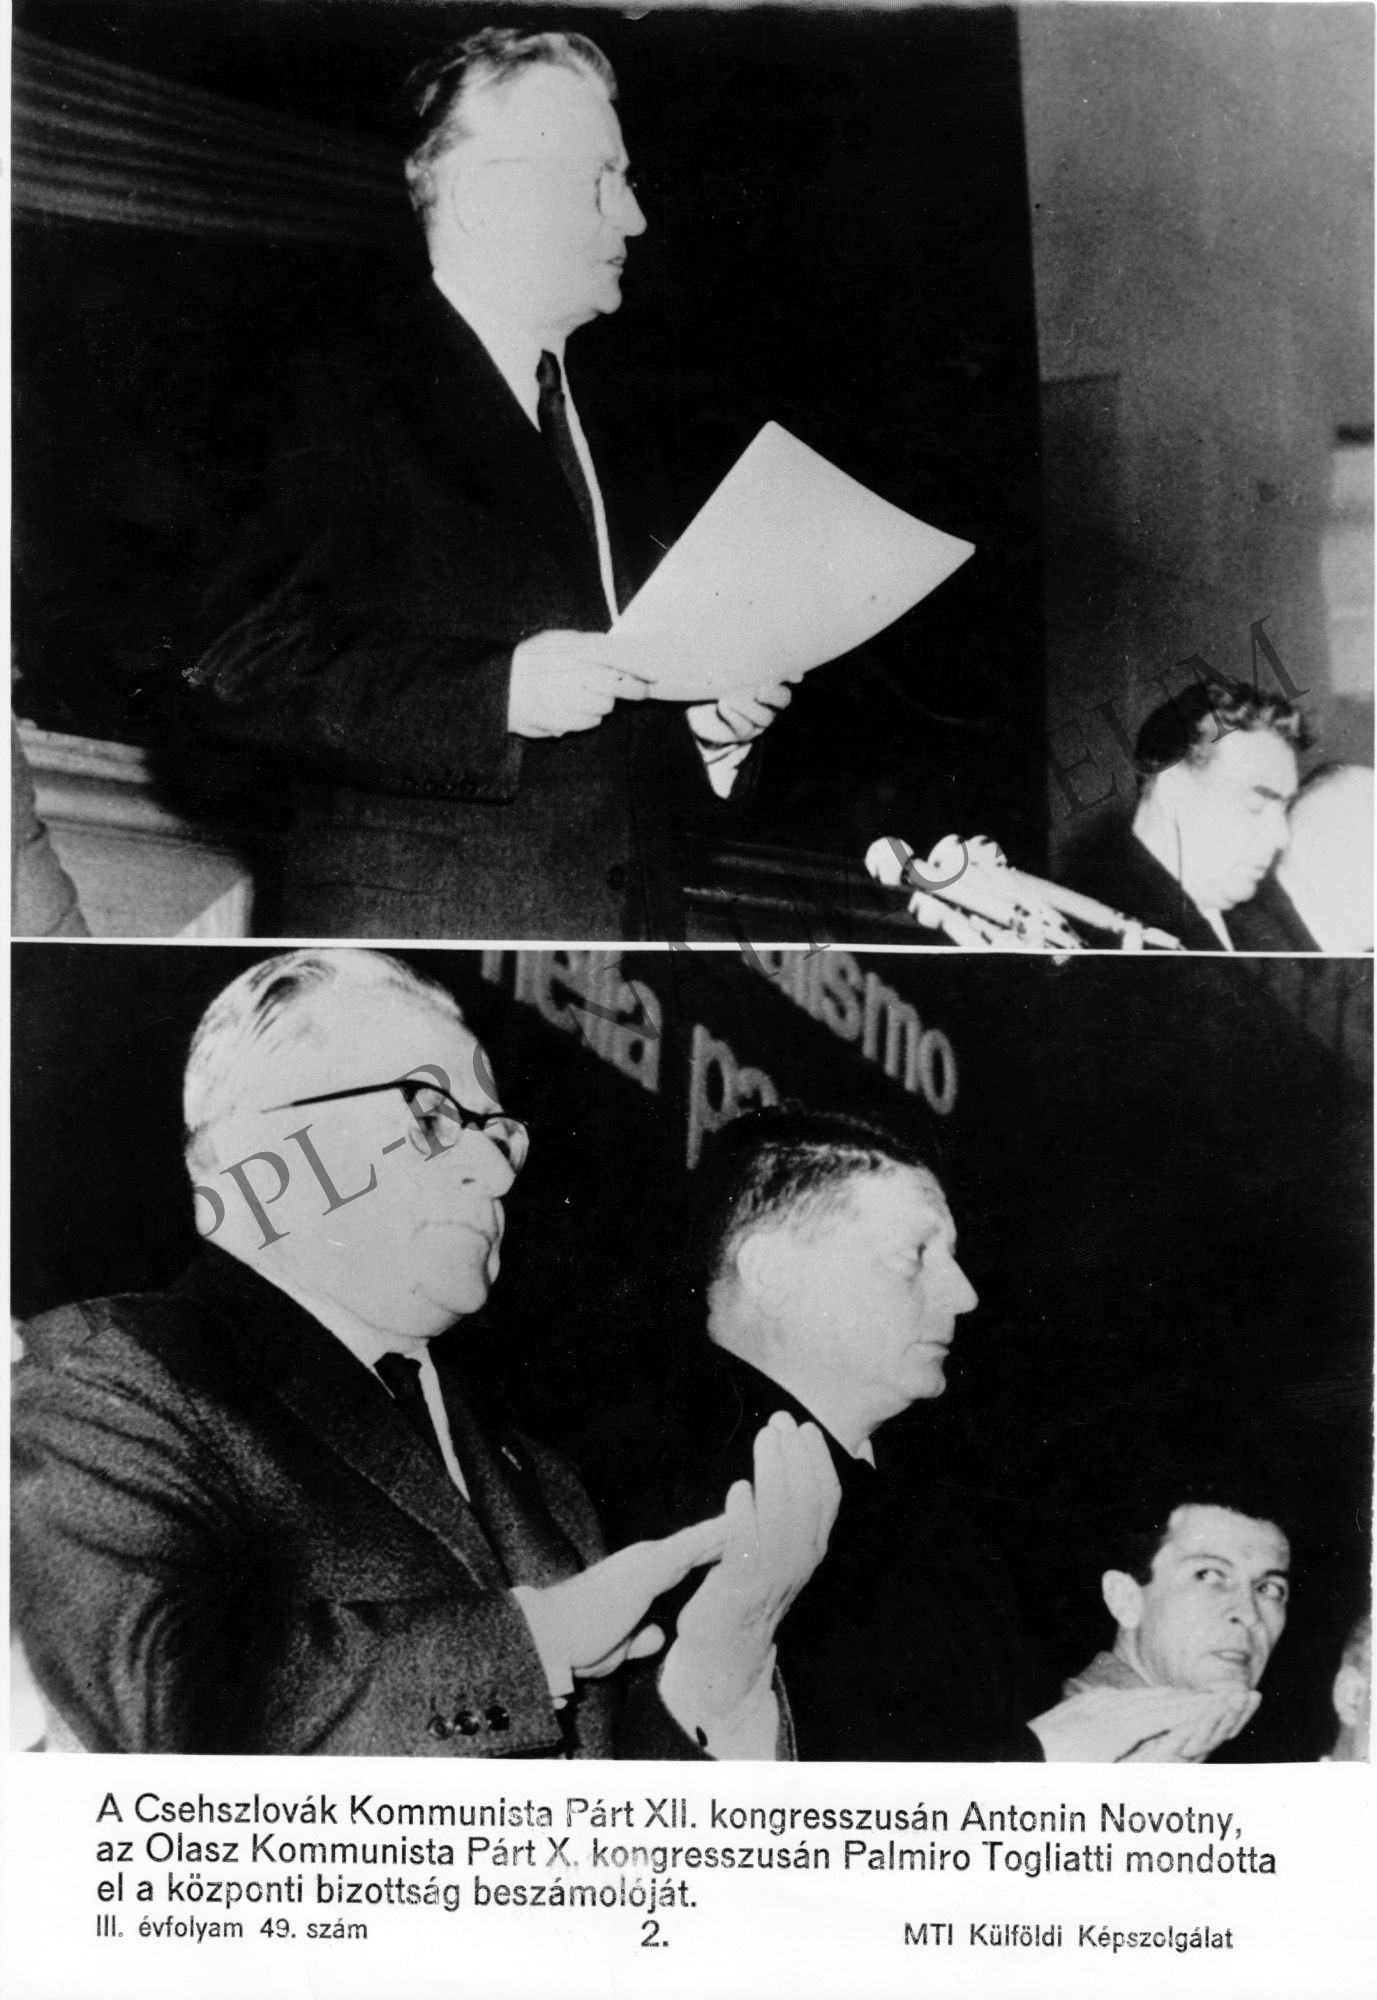 Kétosztatú kép:
1.A CsKP XII. kongresszusán Antonin Novotny beszédet mond.
2. Az Olasz Kommunista Párt X. kongresszusán Palmiro Togliatti beszámolót olvas fel. (Rippl-Rónai Múzeum CC BY-NC-SA)